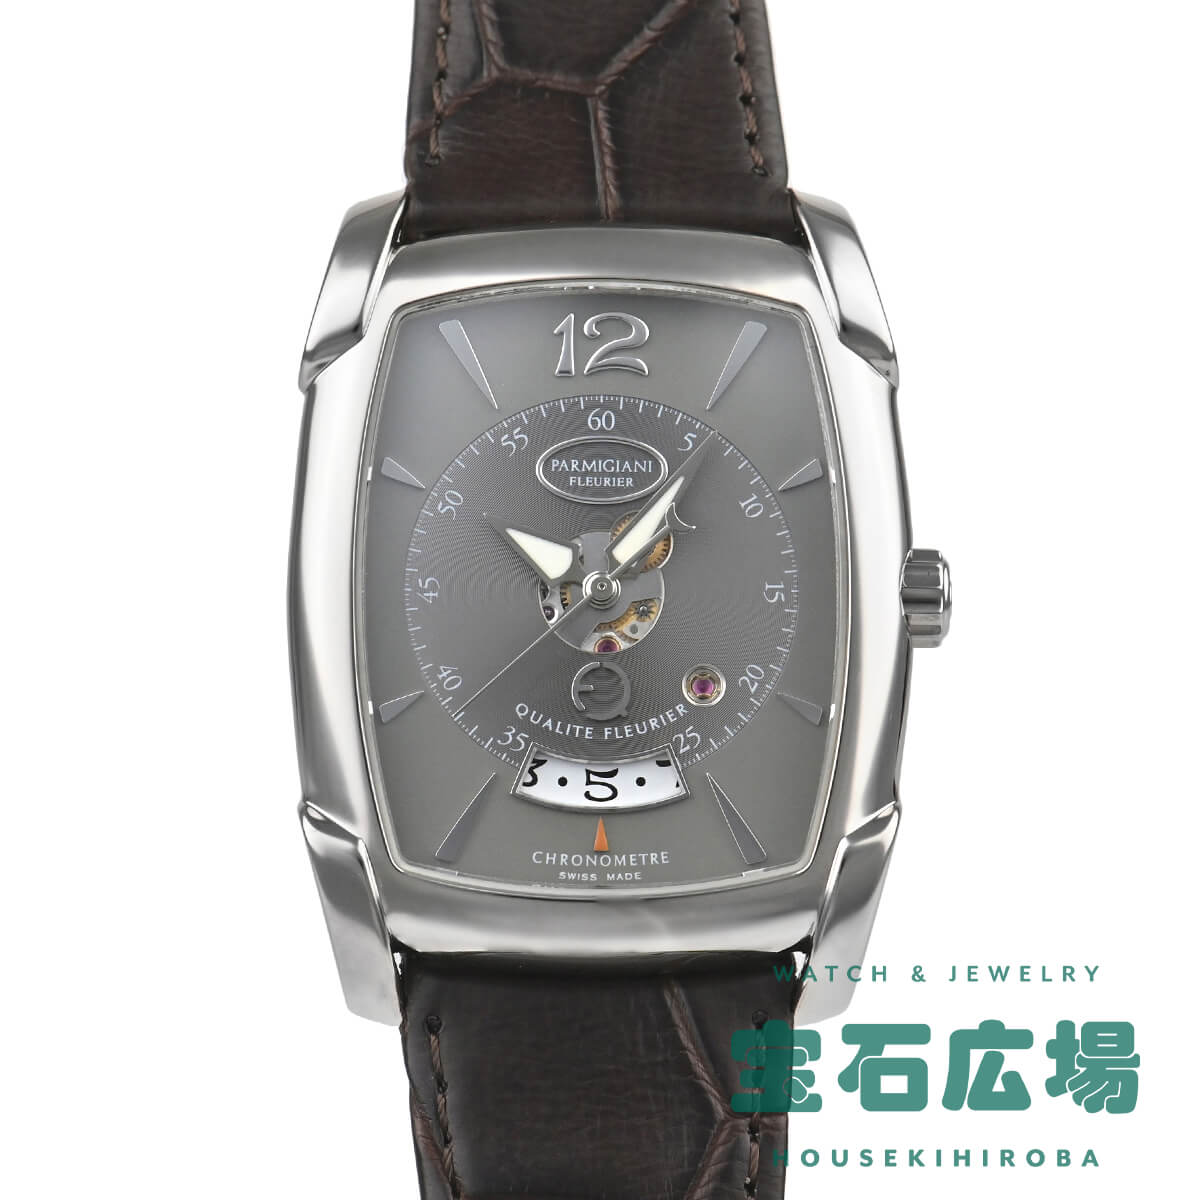 パルミジャーニ・フルリエ  PARMIGIANI FLEURIER カルパグランデ カリテフルリエ 世界限定25本 PF012686-01 中古 メンズ 腕時計